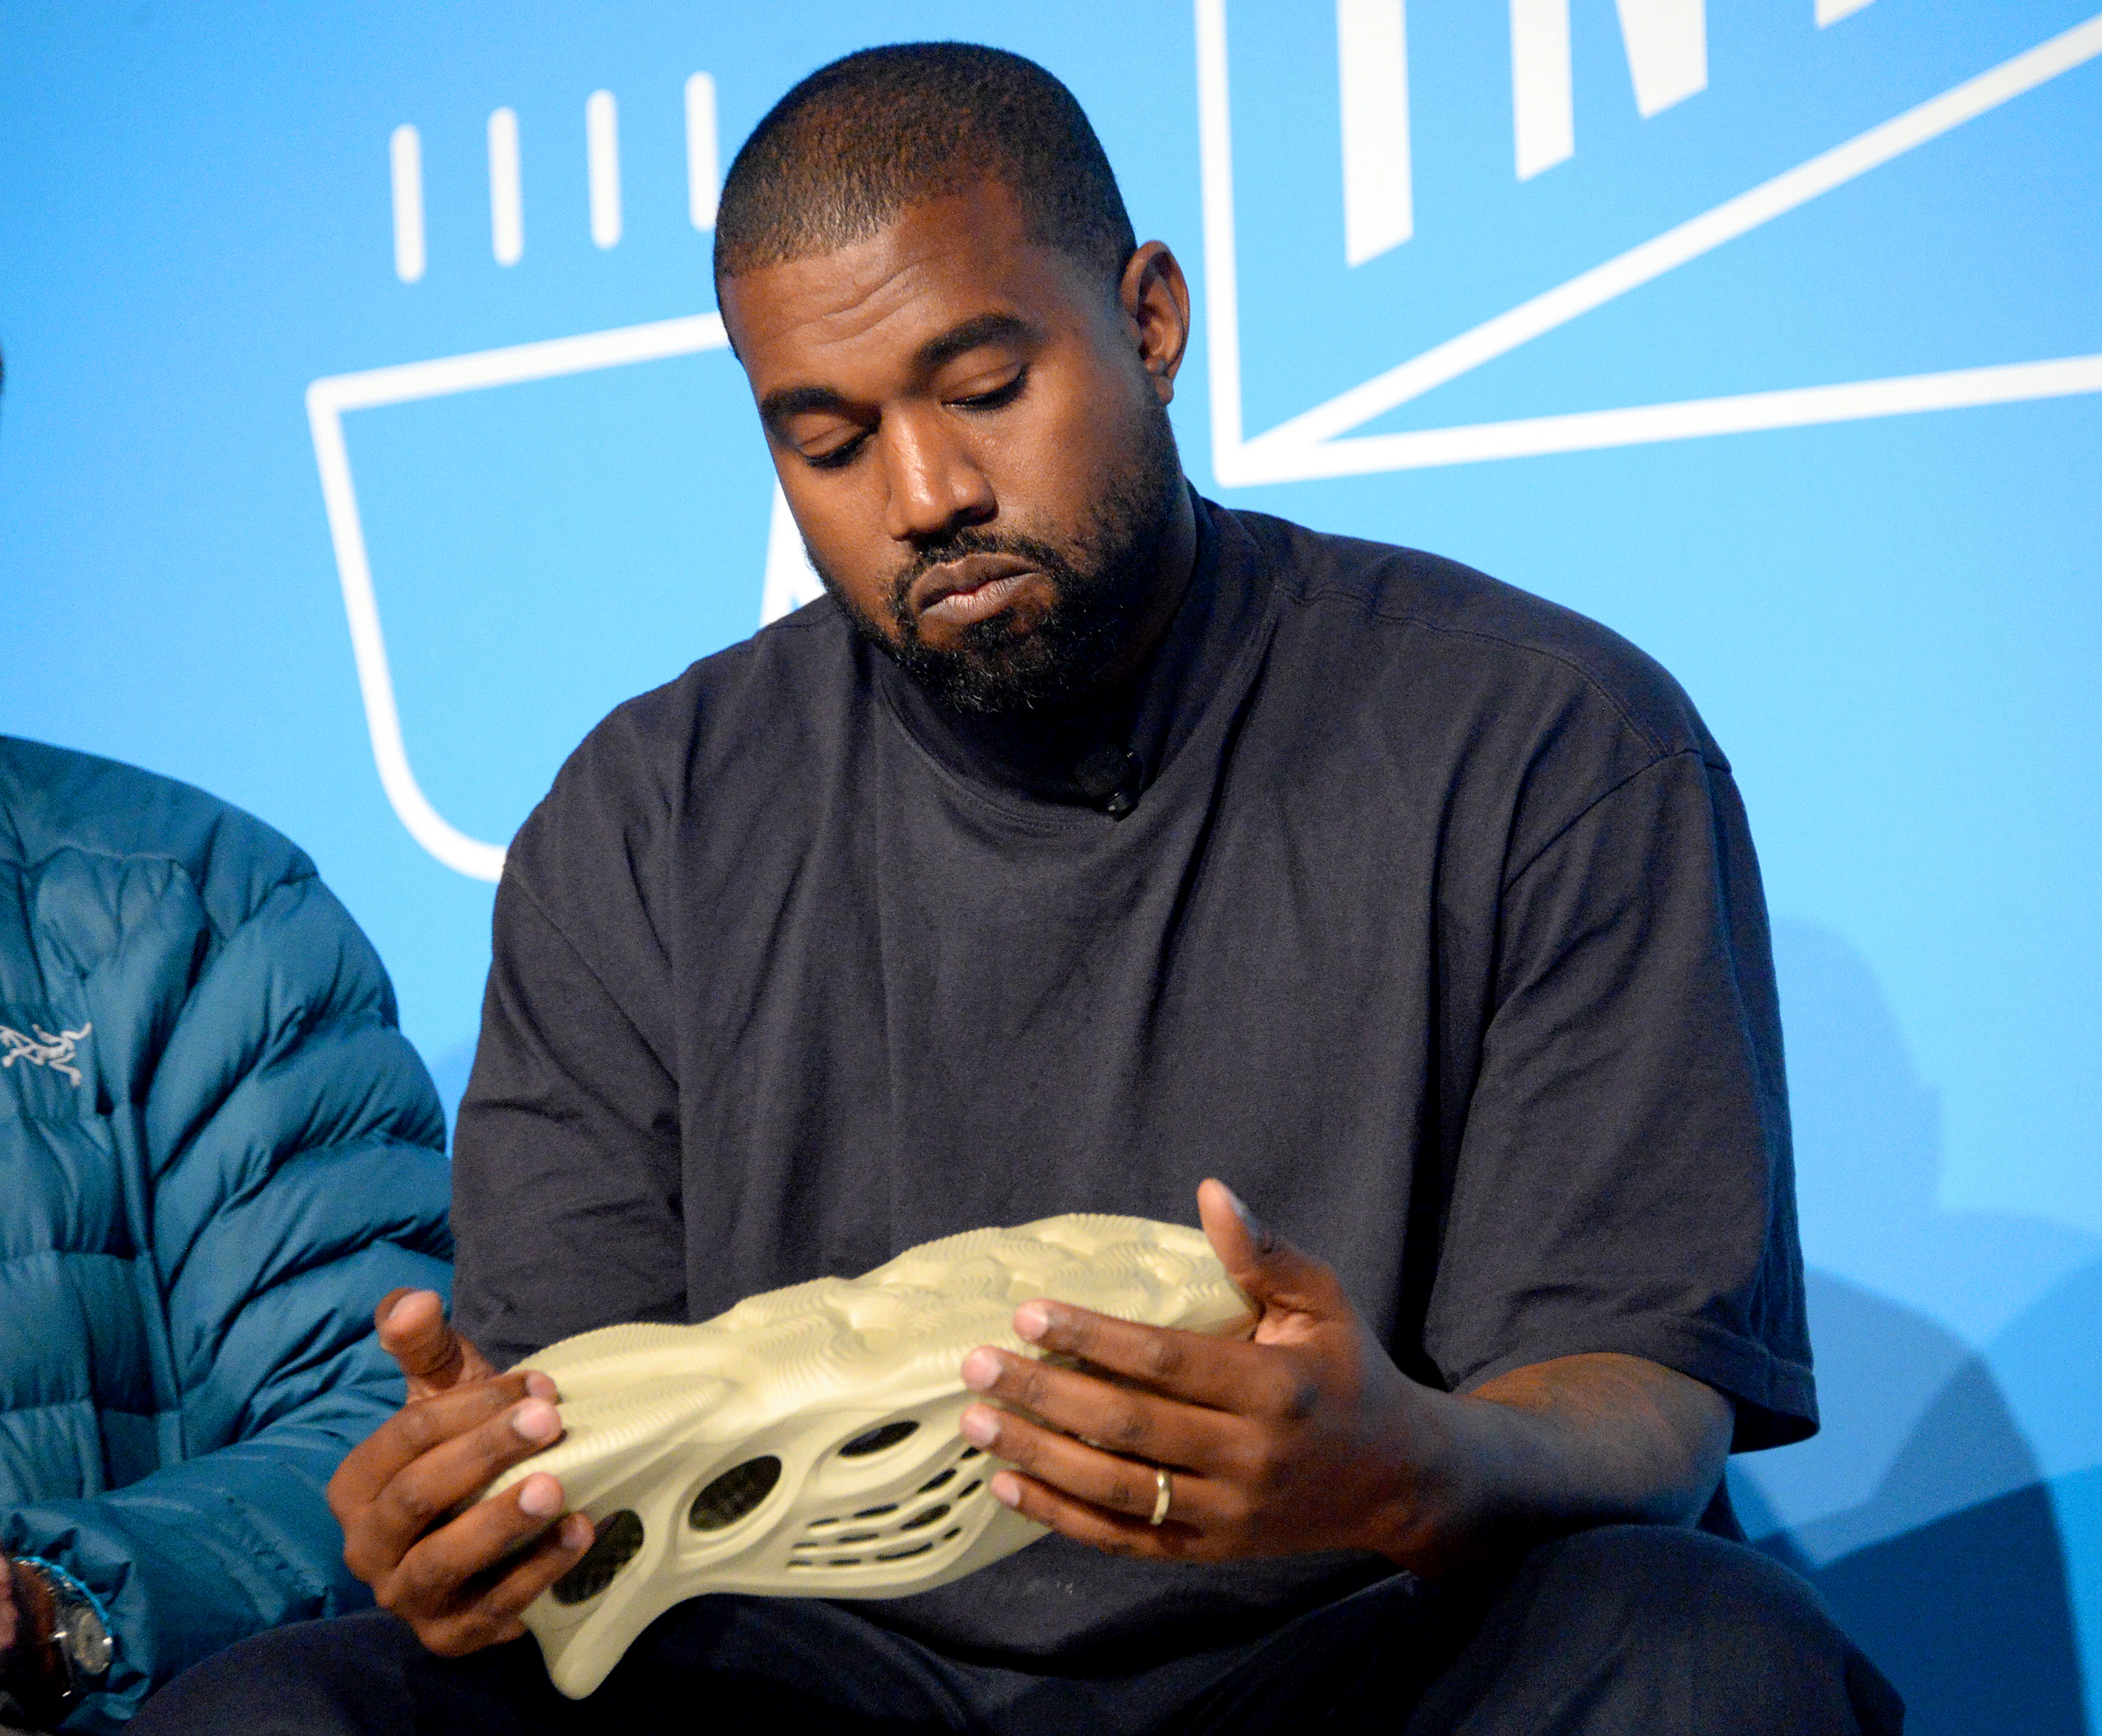 Adidas Yeezy Foam Runner "Onyx" Release Date Revealed